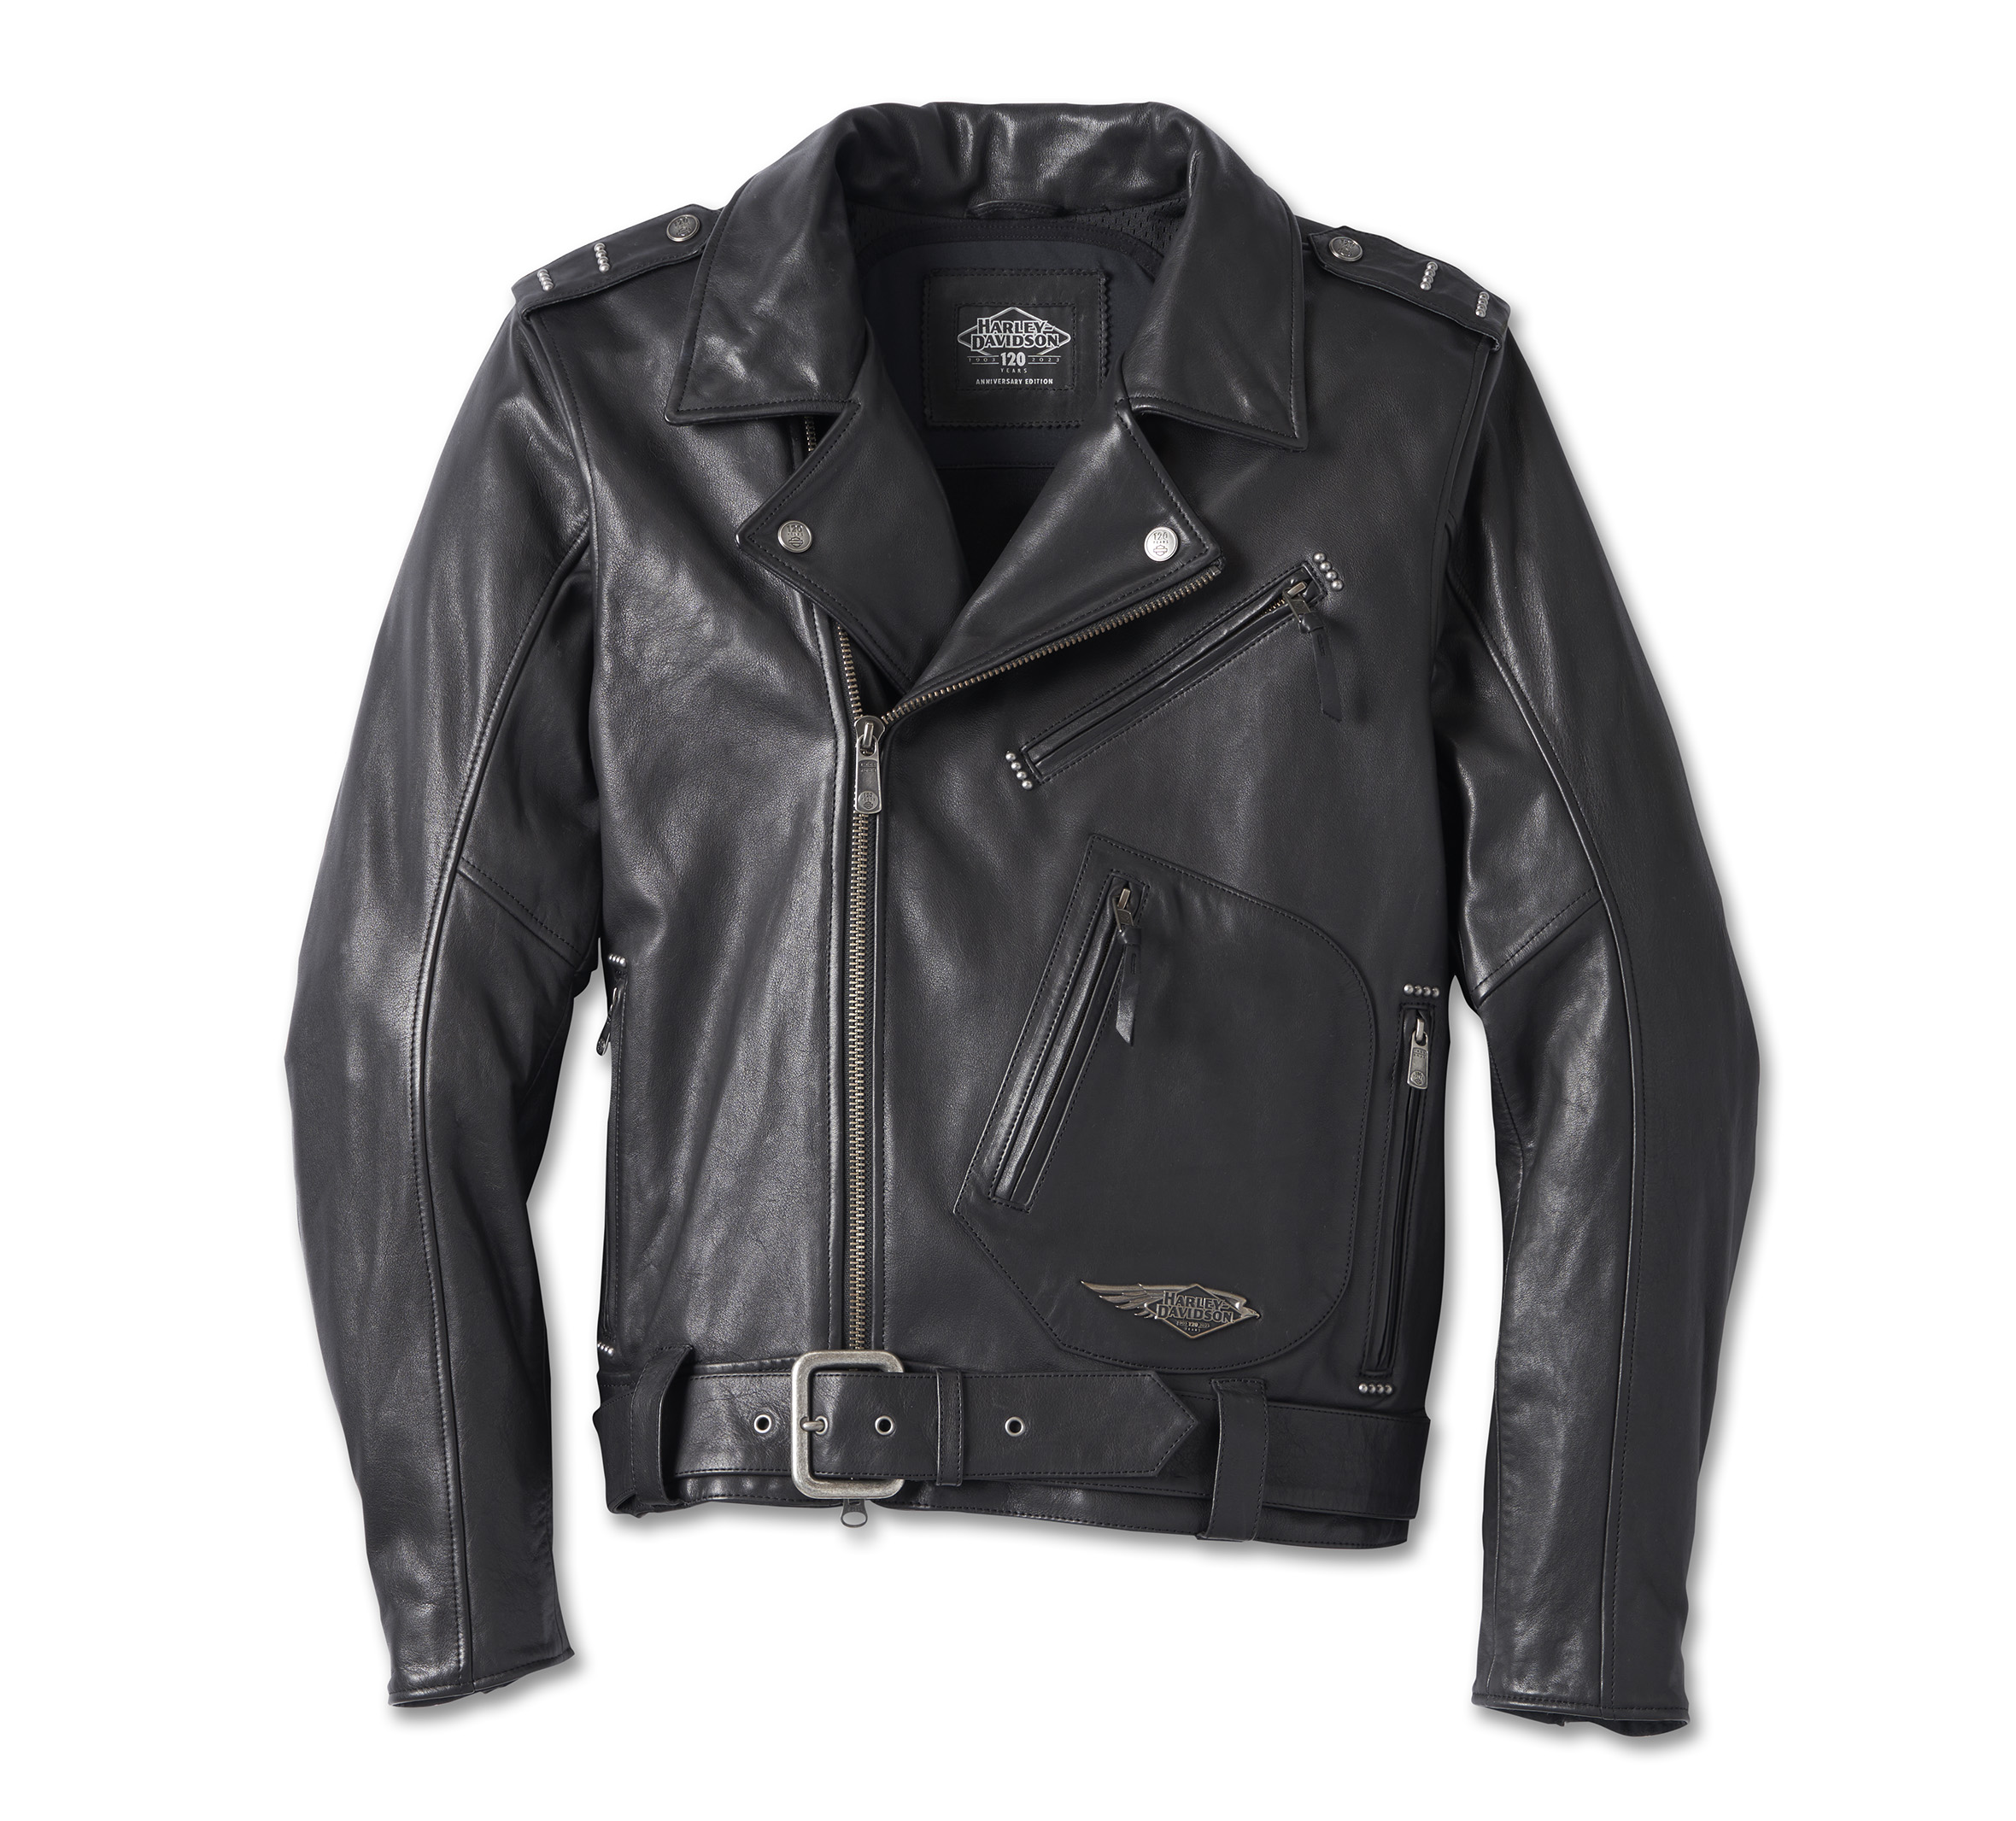 Harley-Davidson Leather Jacket www.np.gov.lk